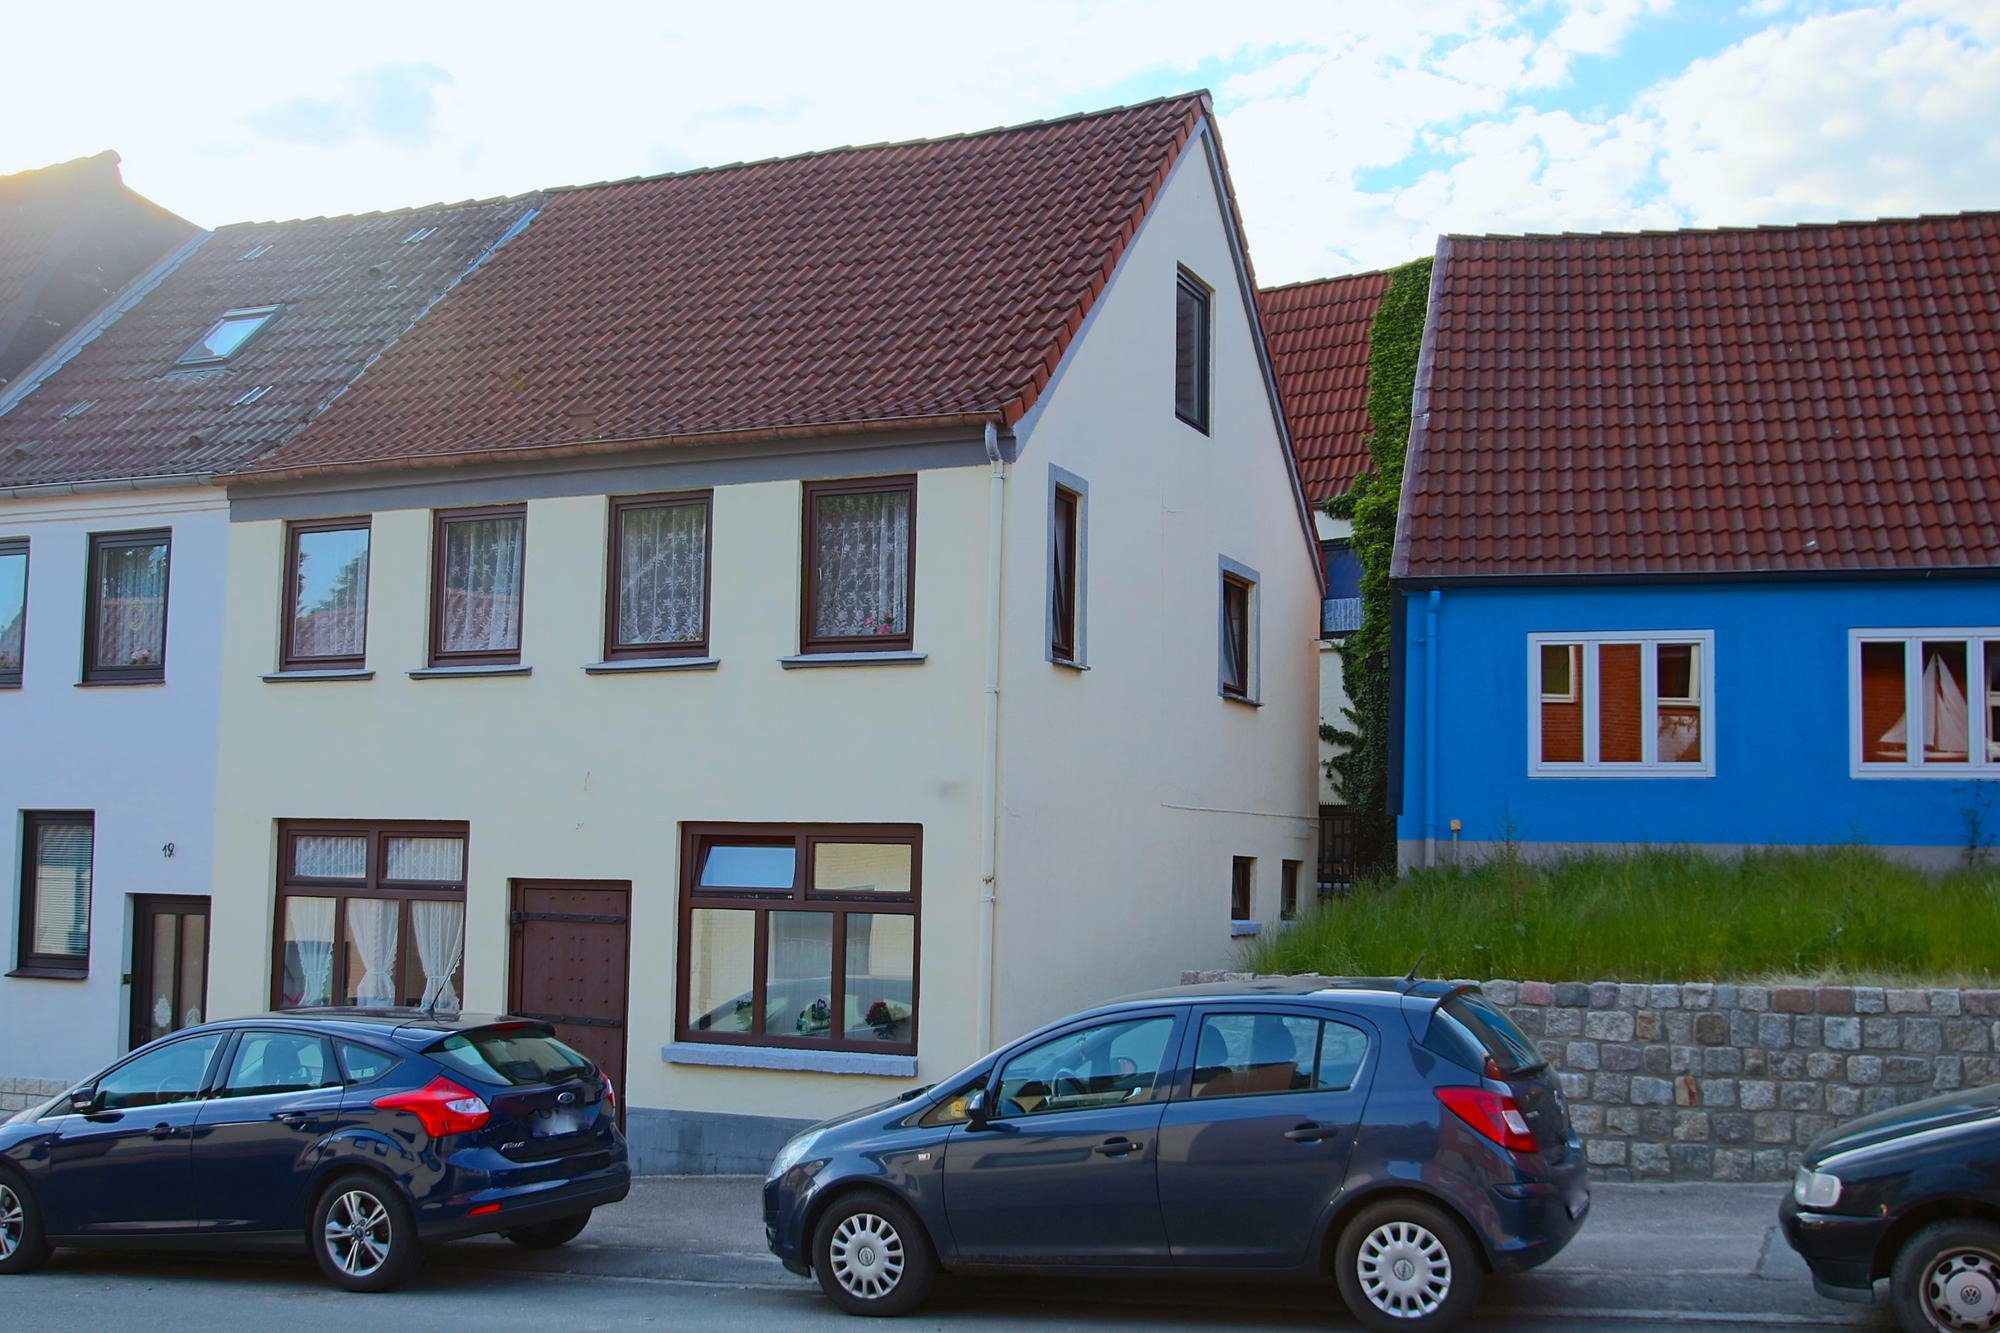 Immobilienangebot - Flensburg - Alle - Einfachstes Anlageobjekt mit 5 Wohneinheiten, nahe der Innenstadt und Uni!